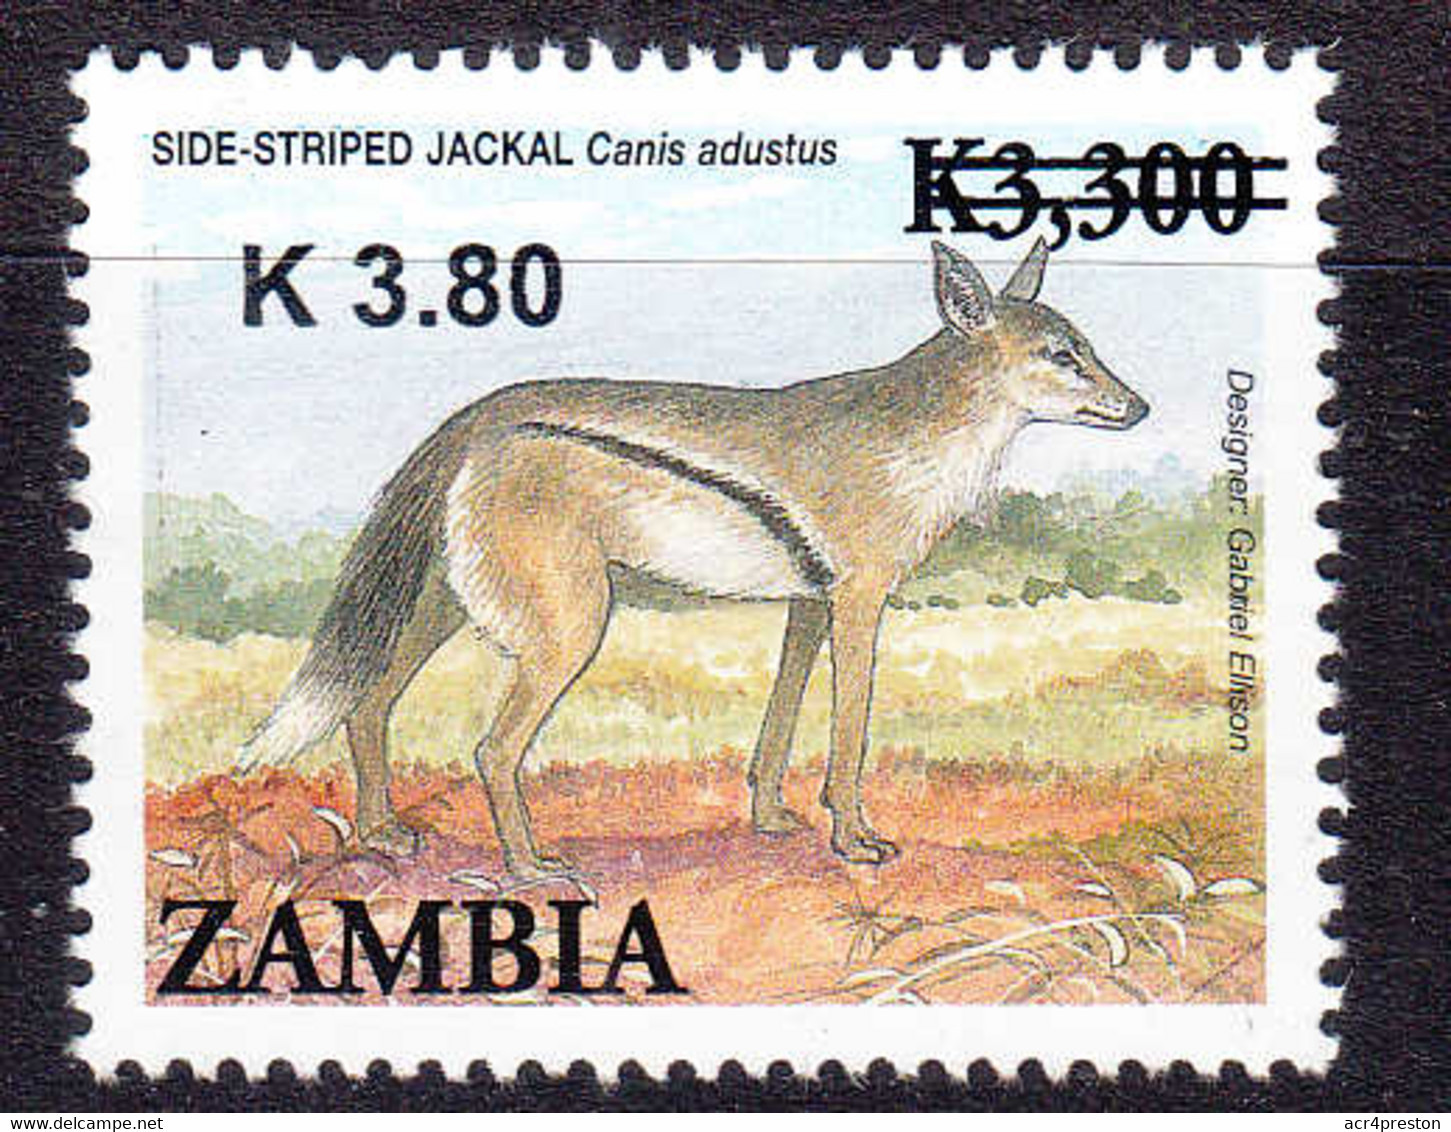 Zm1129 ZAMBIA 2014, NEW ISSUE K3.80 On K3,300 Animals MNH - Zambia (1965-...)